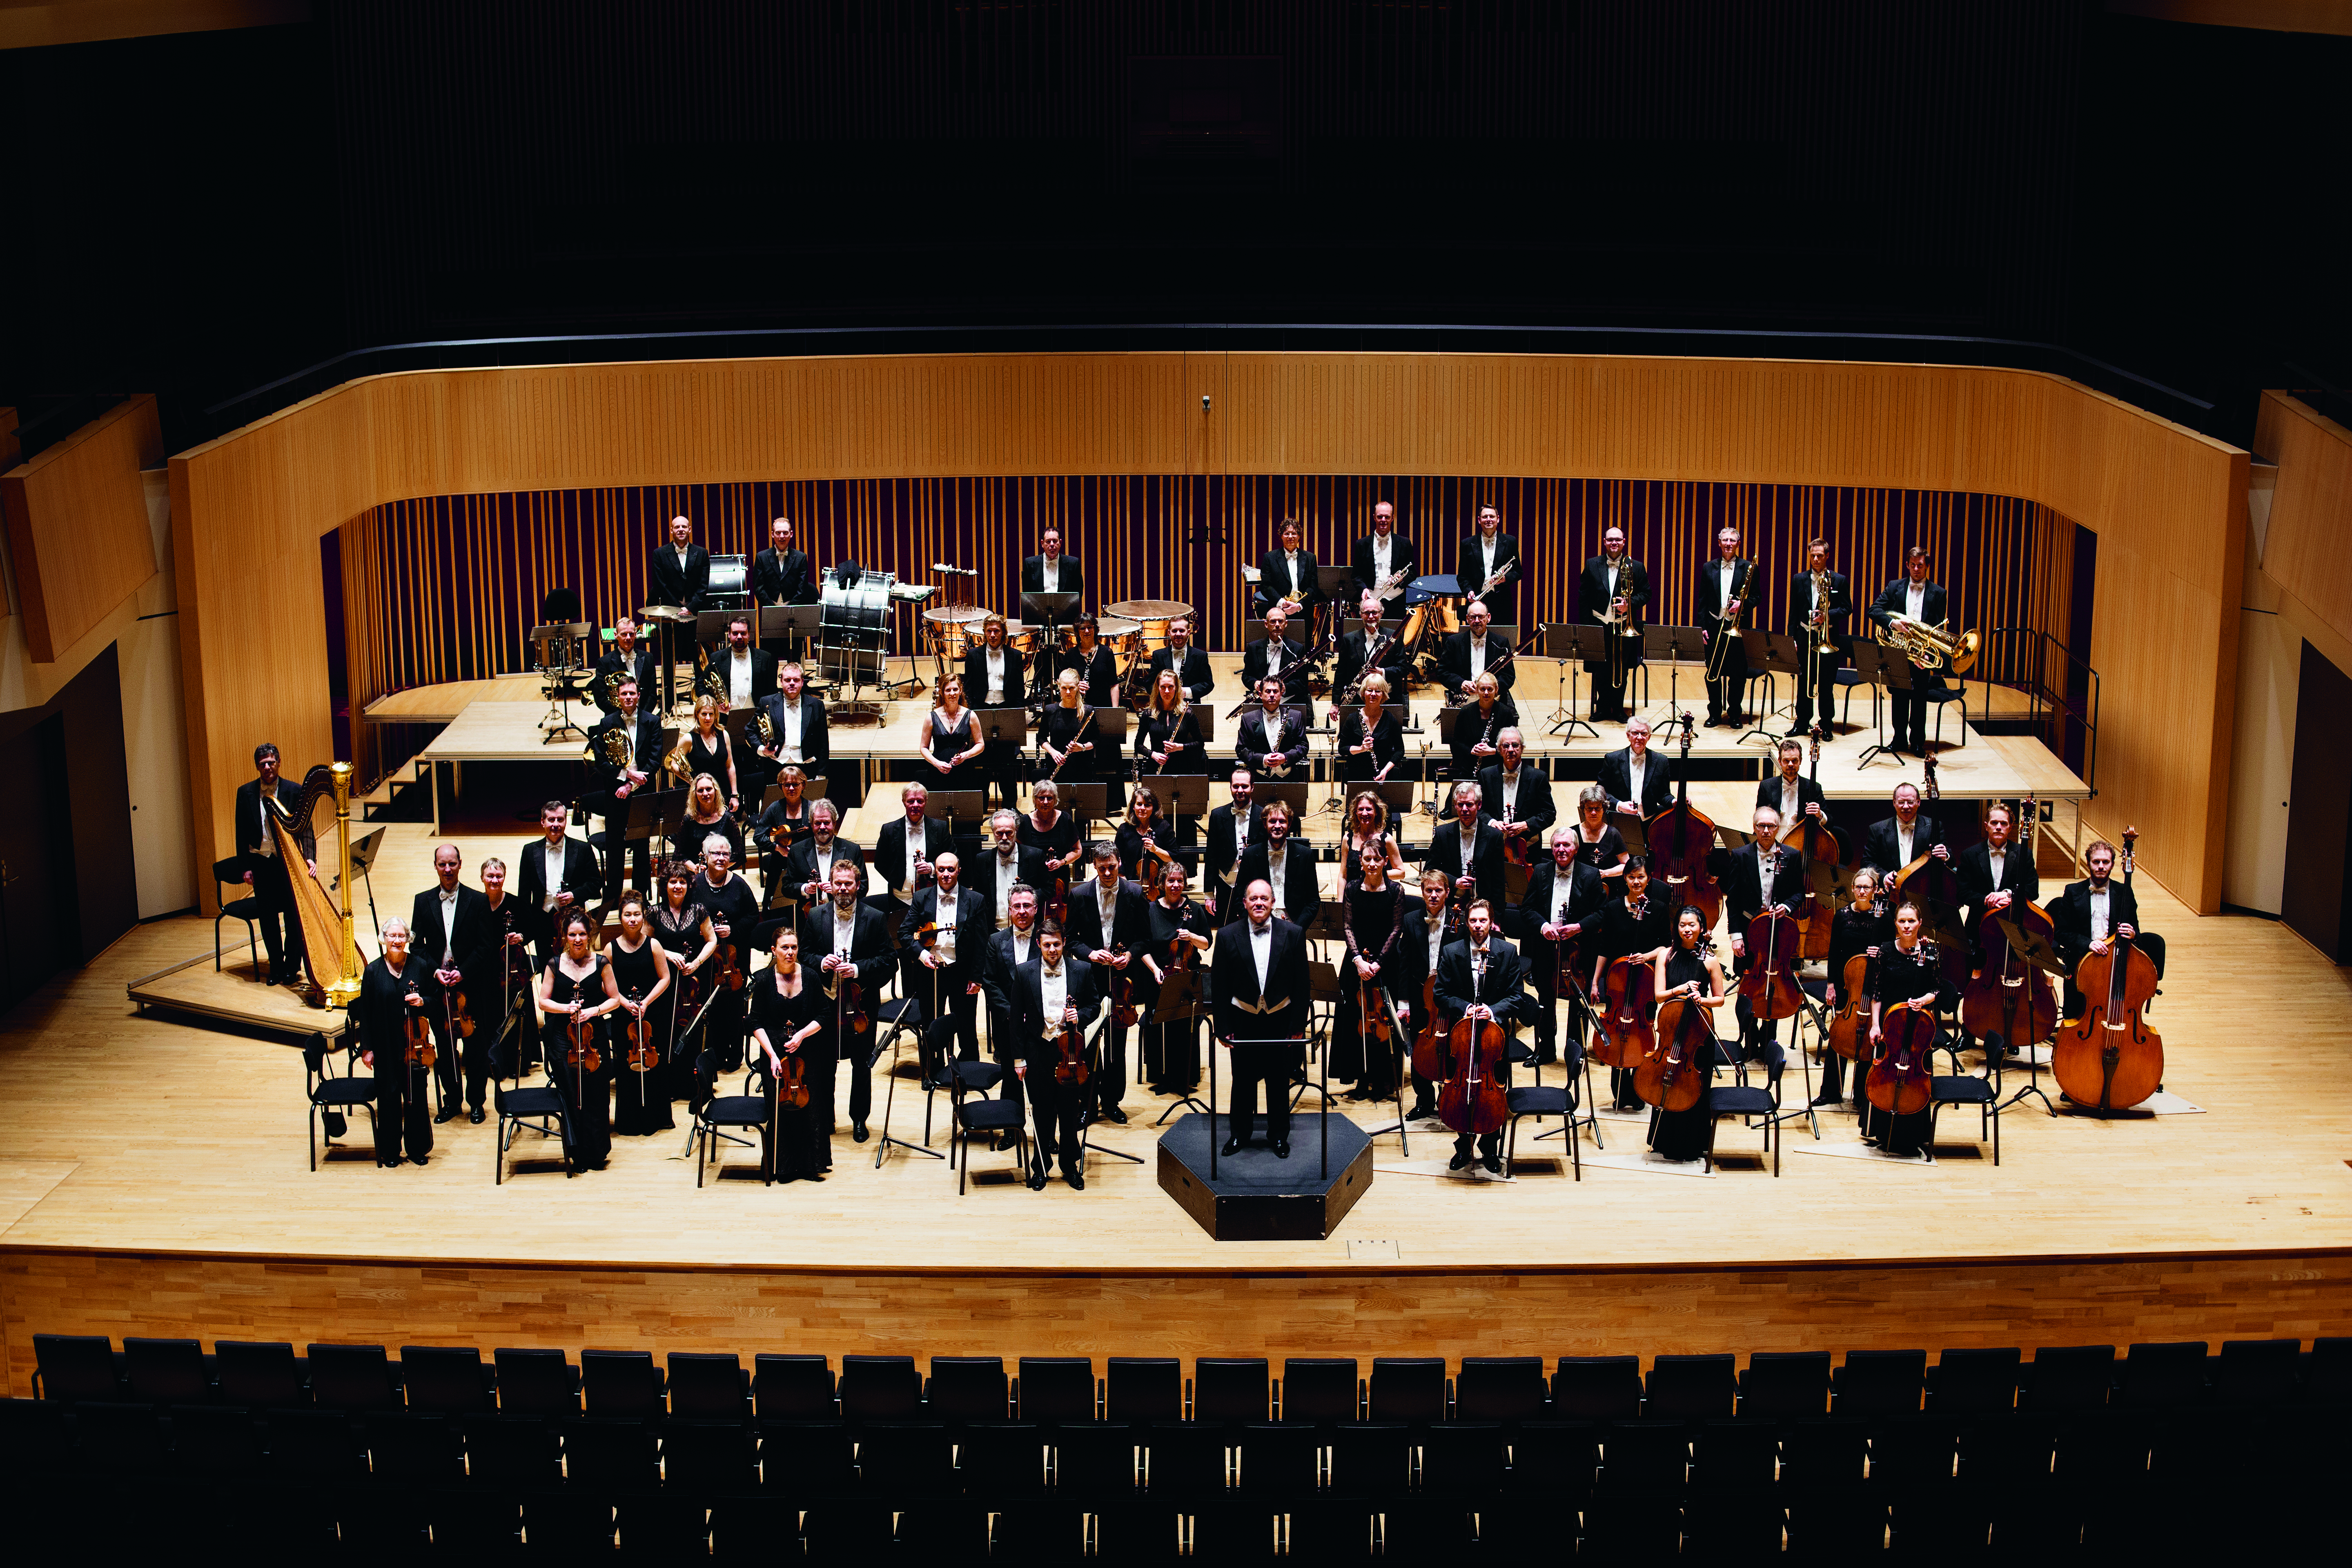 Fotos af hele orkestret